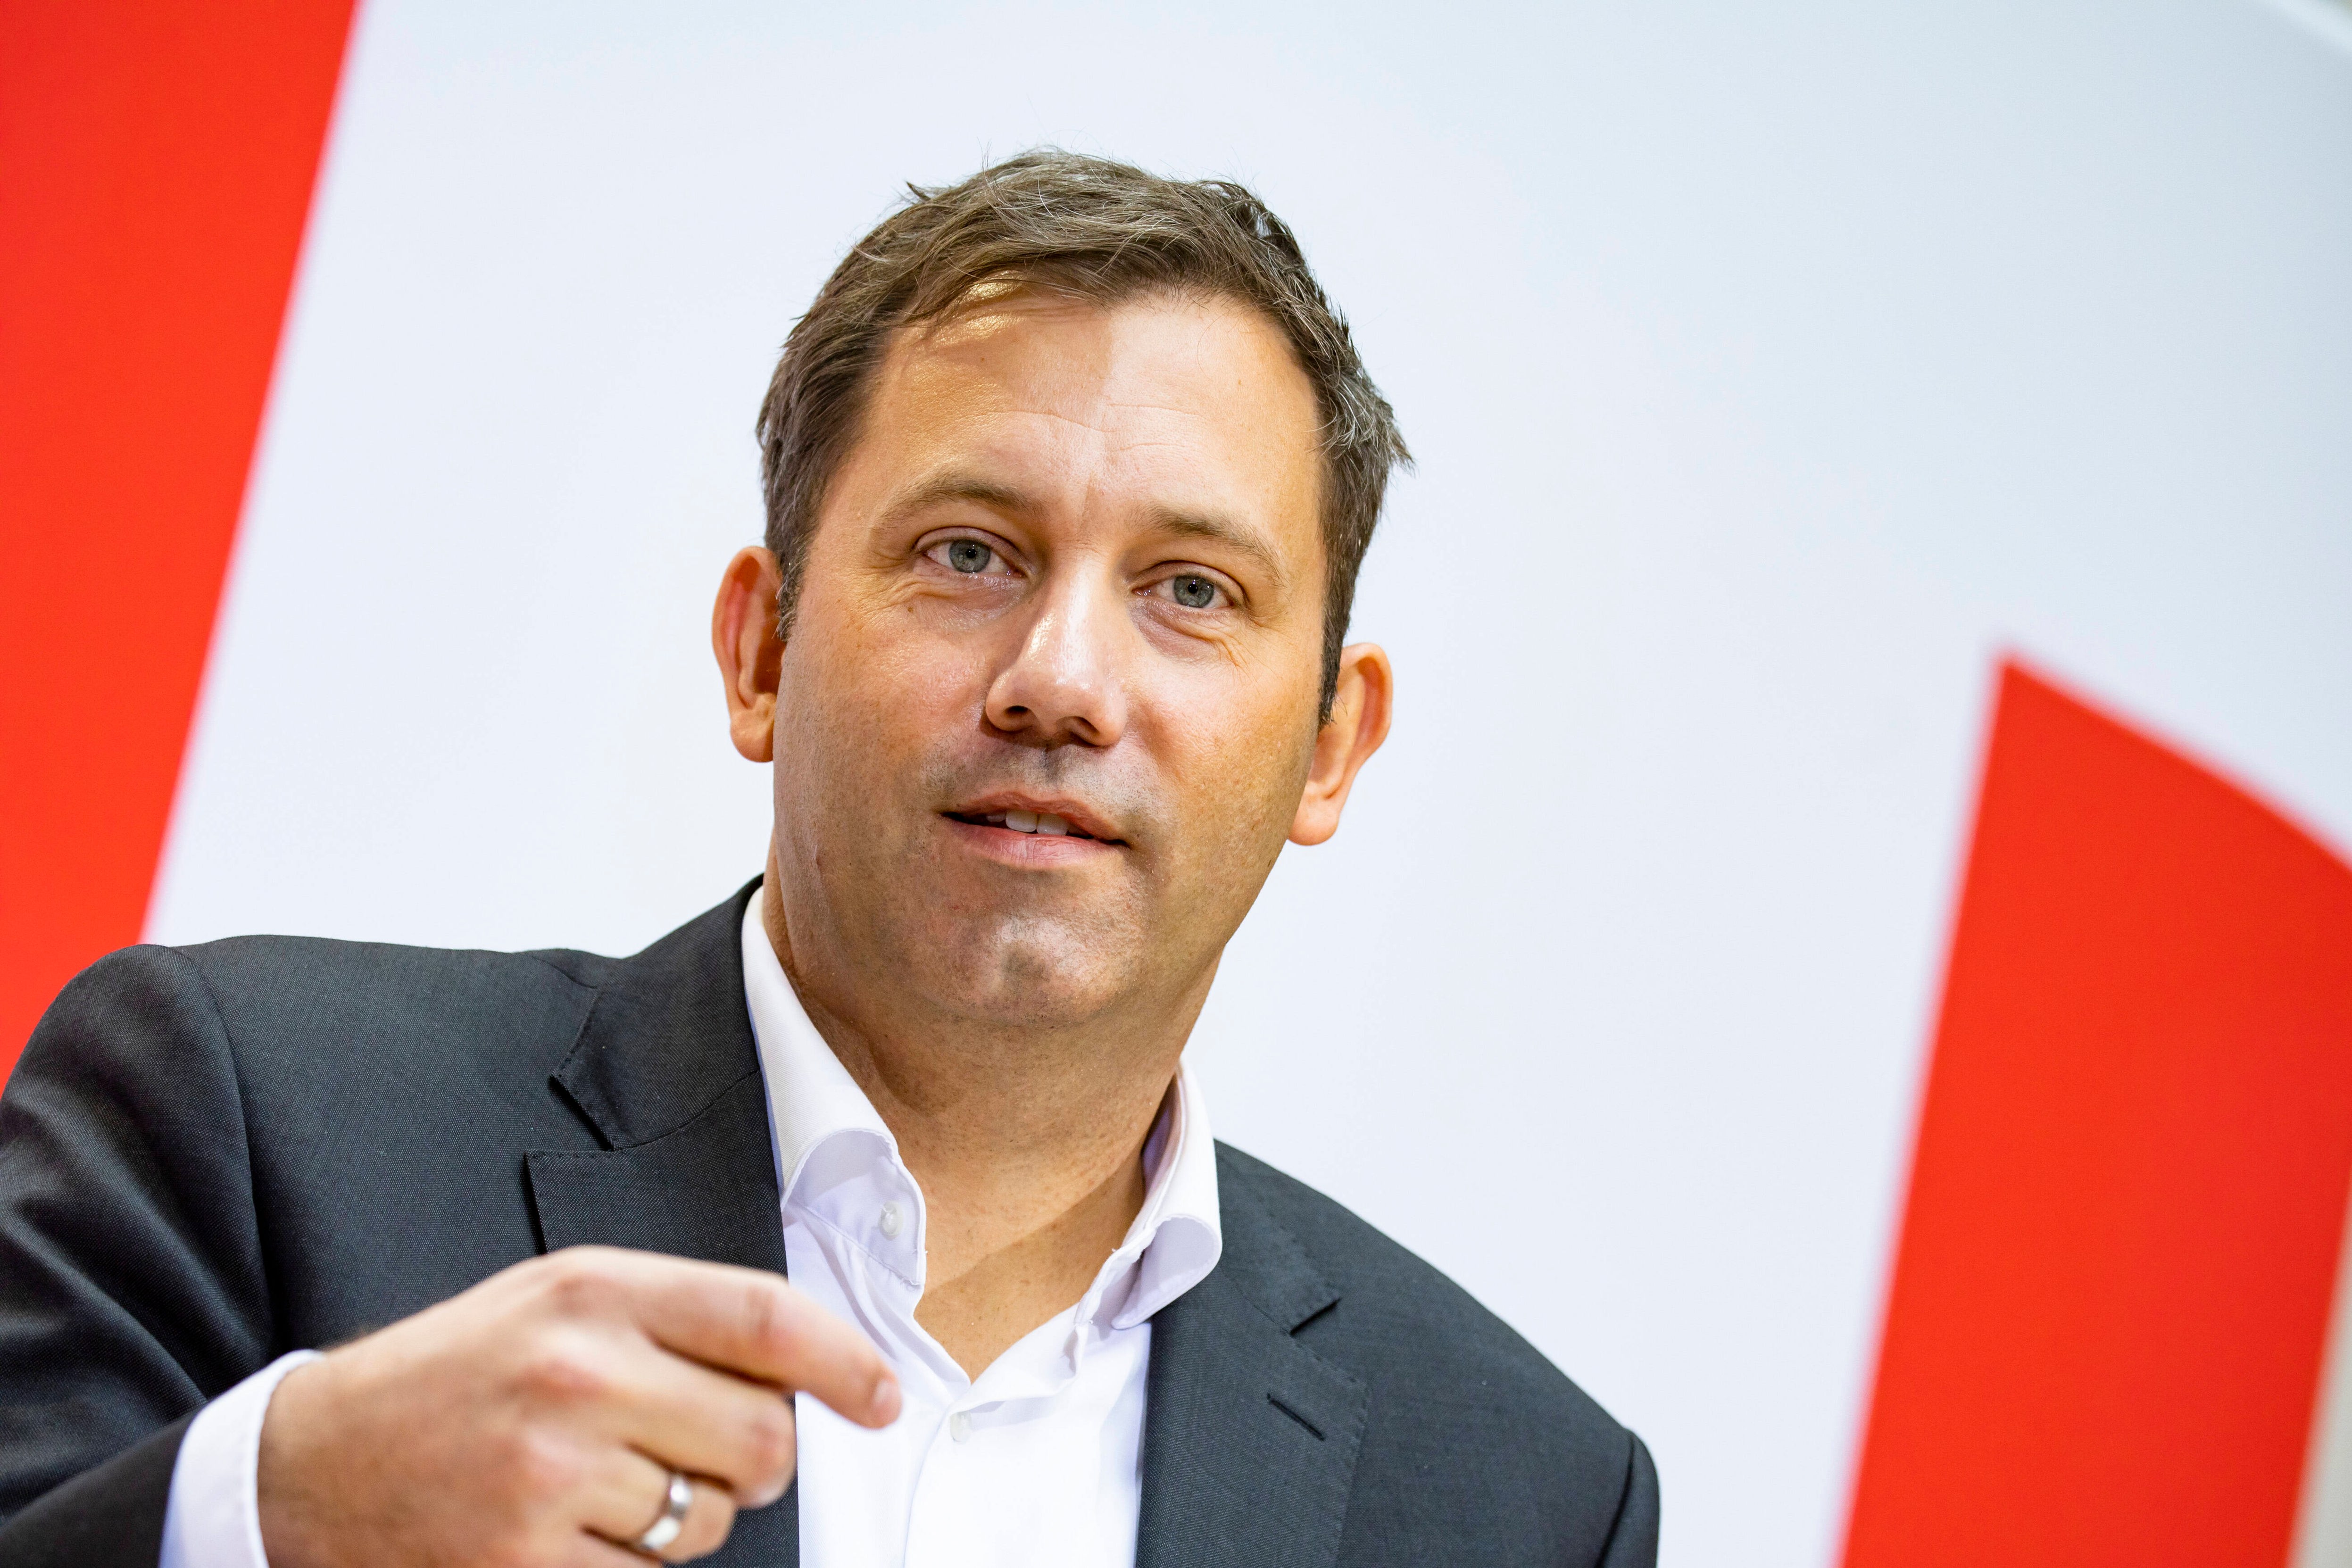 Medienbericht - SPD will ihre Außenpolitik neu ausrichten - Positionspapier erarbeitet